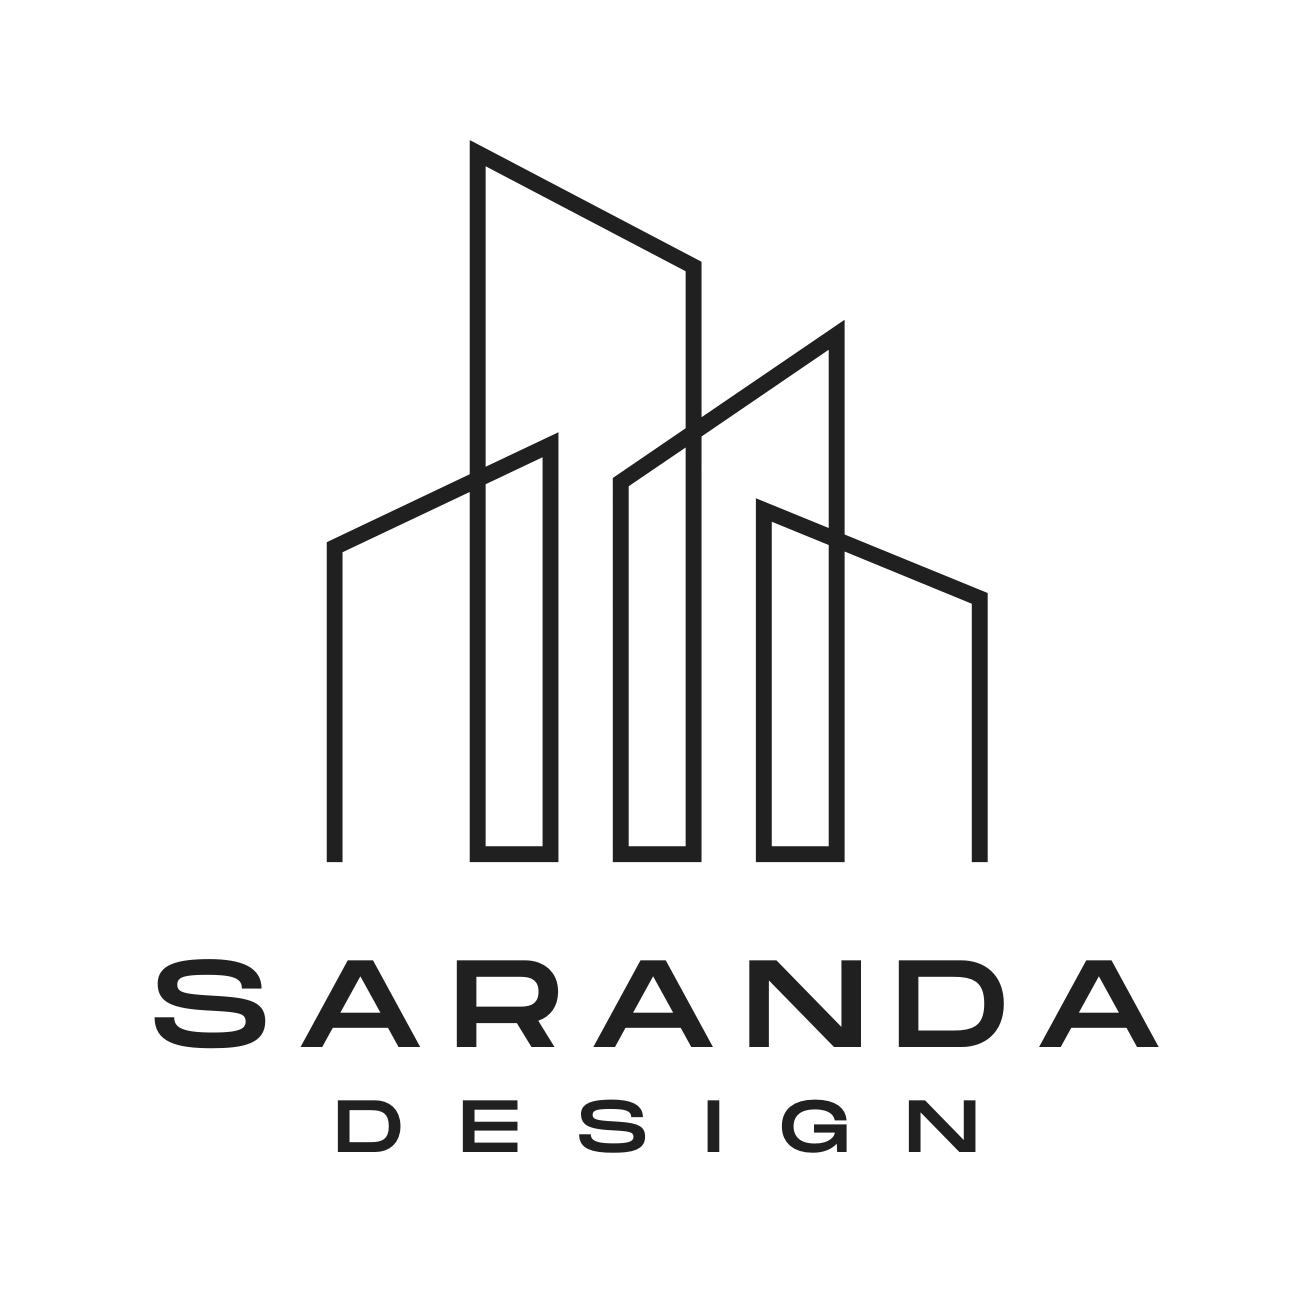 Saranda Design